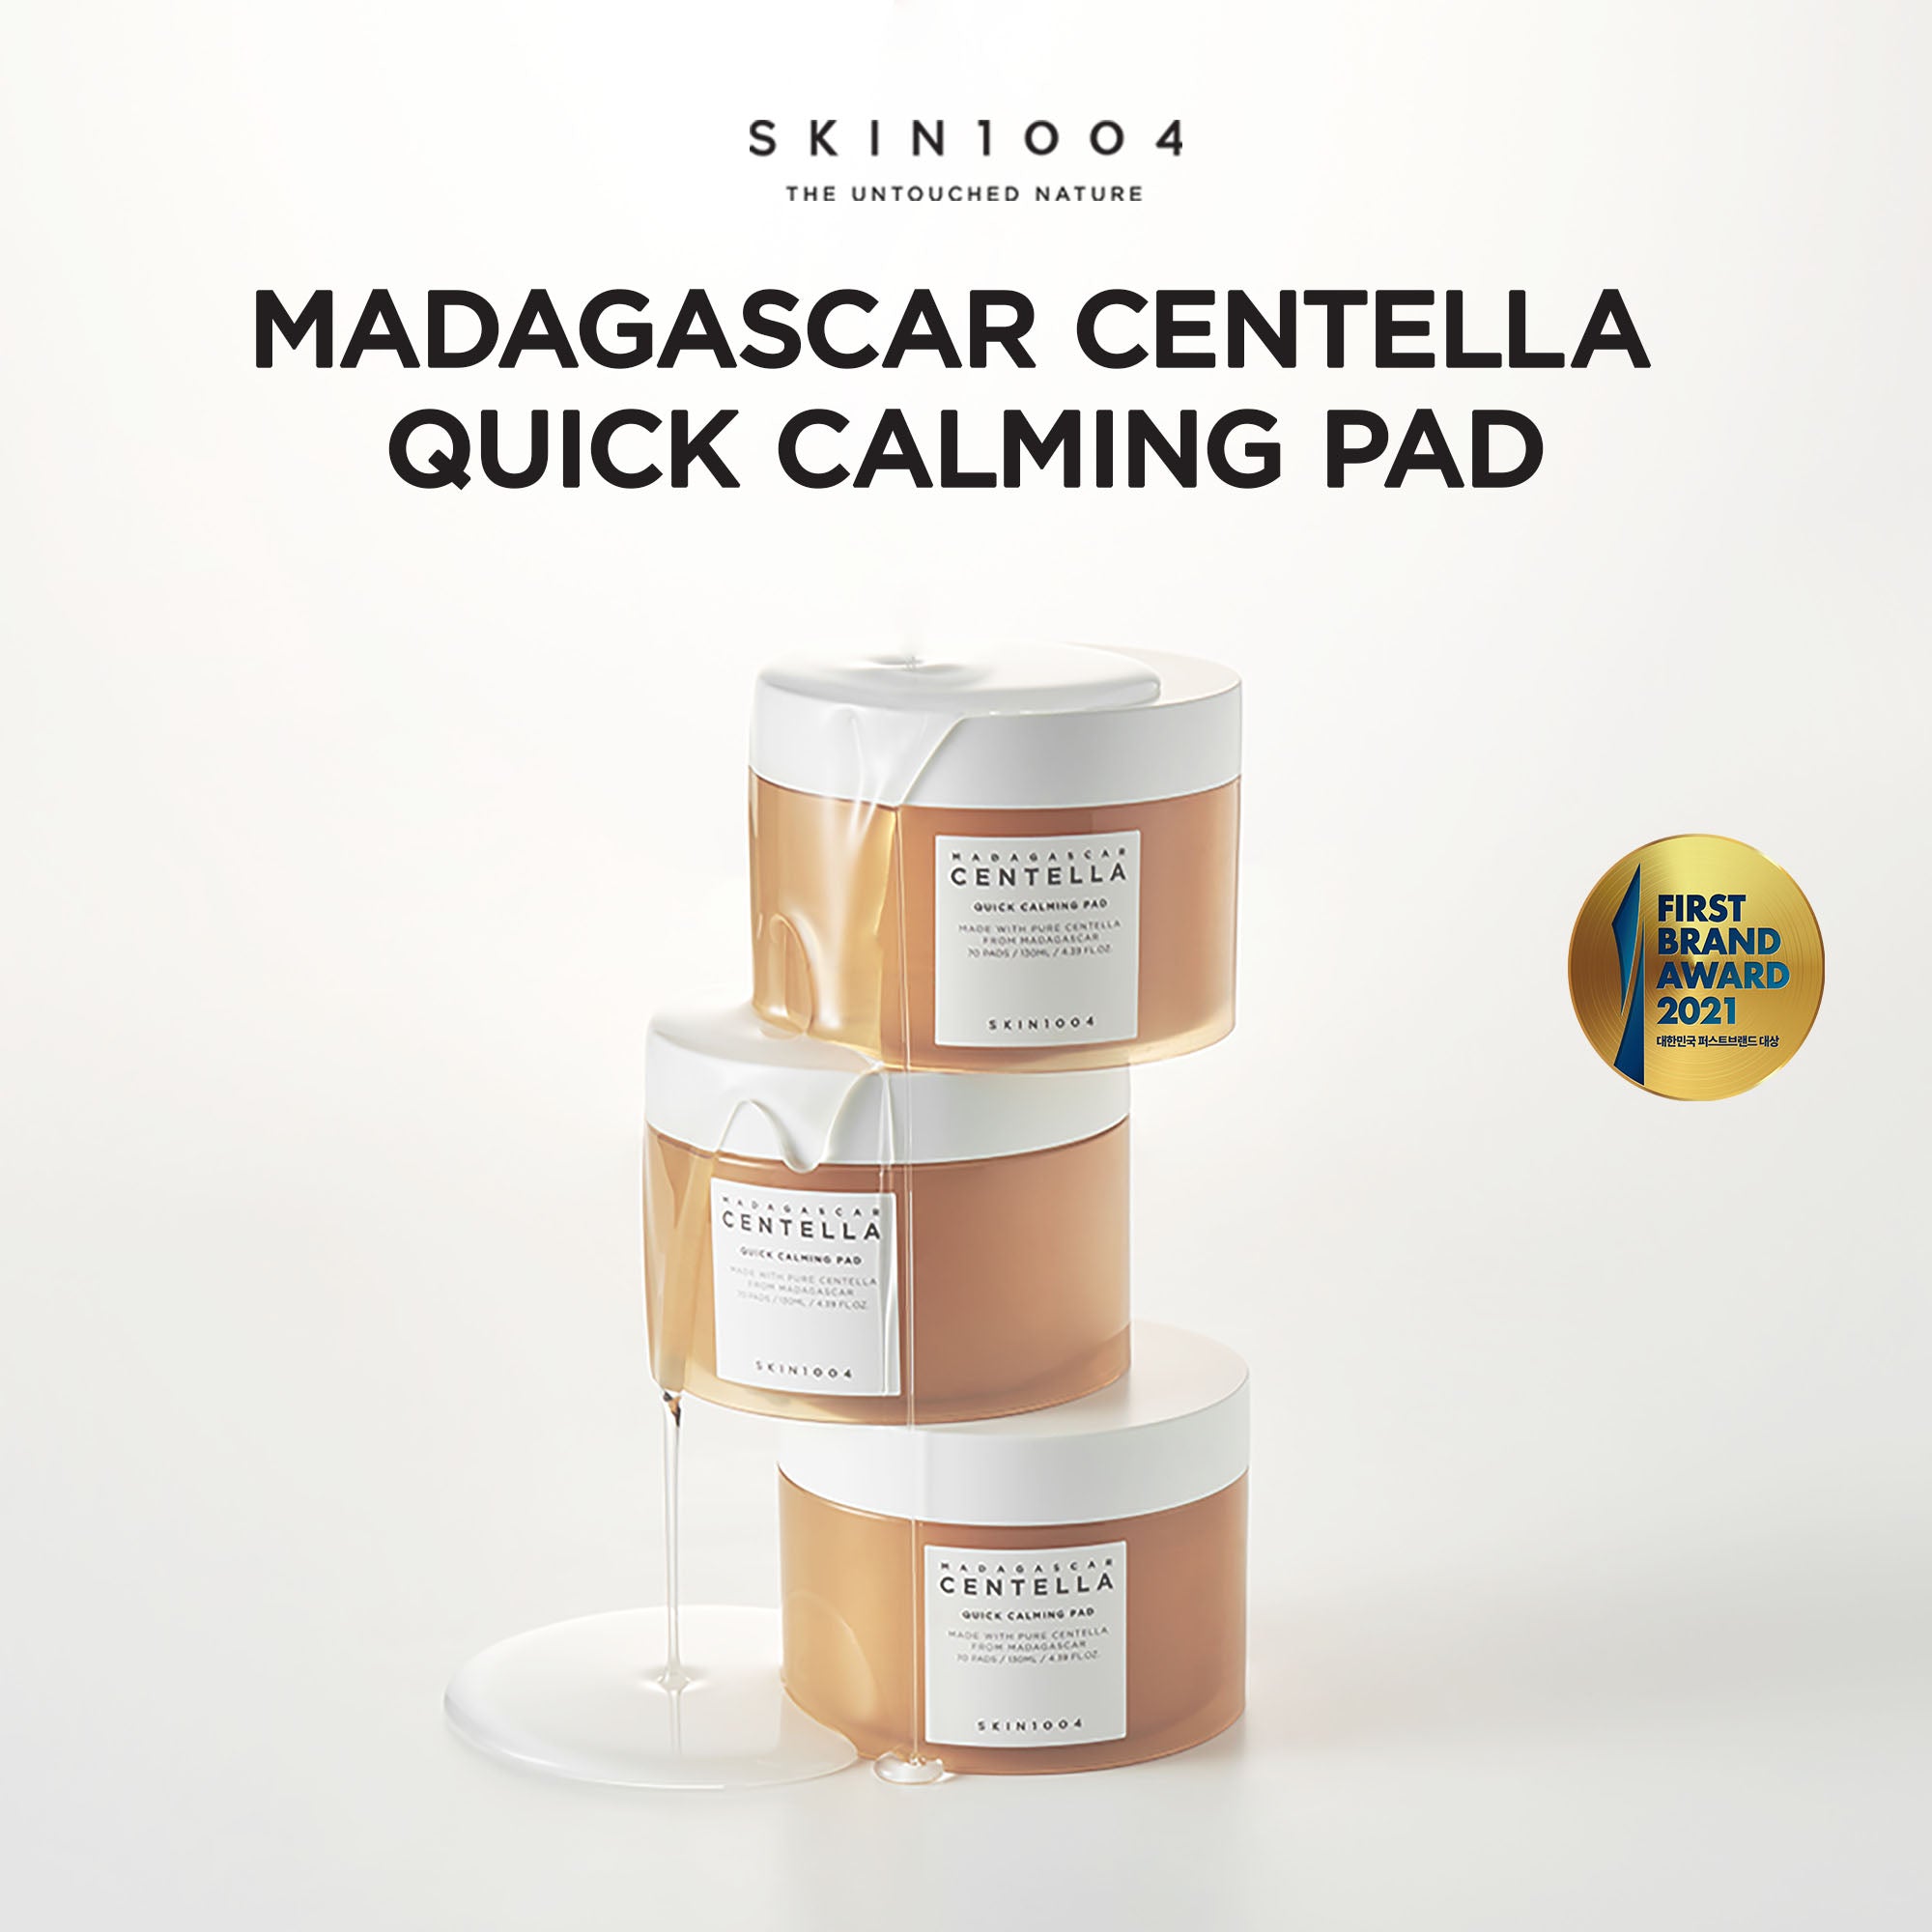 SKIN1004 Madagascar Centella Quick Calming Pad